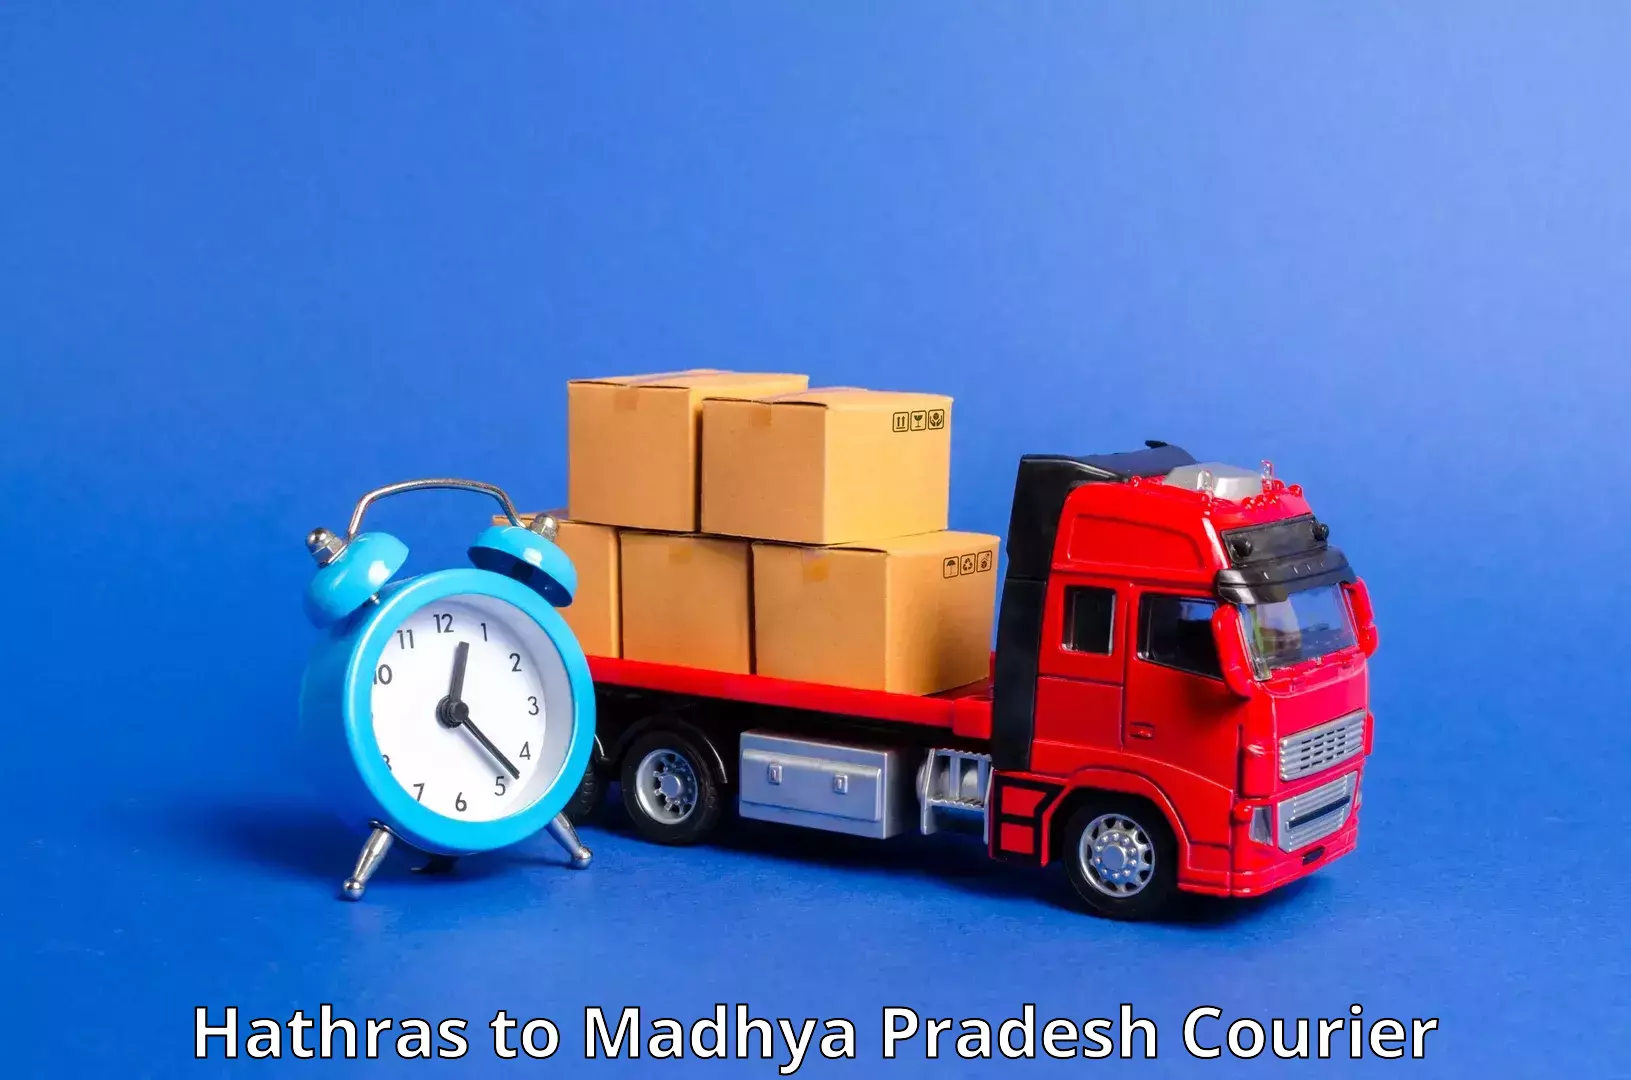 Digital courier platforms Hathras to Chand Chaurai